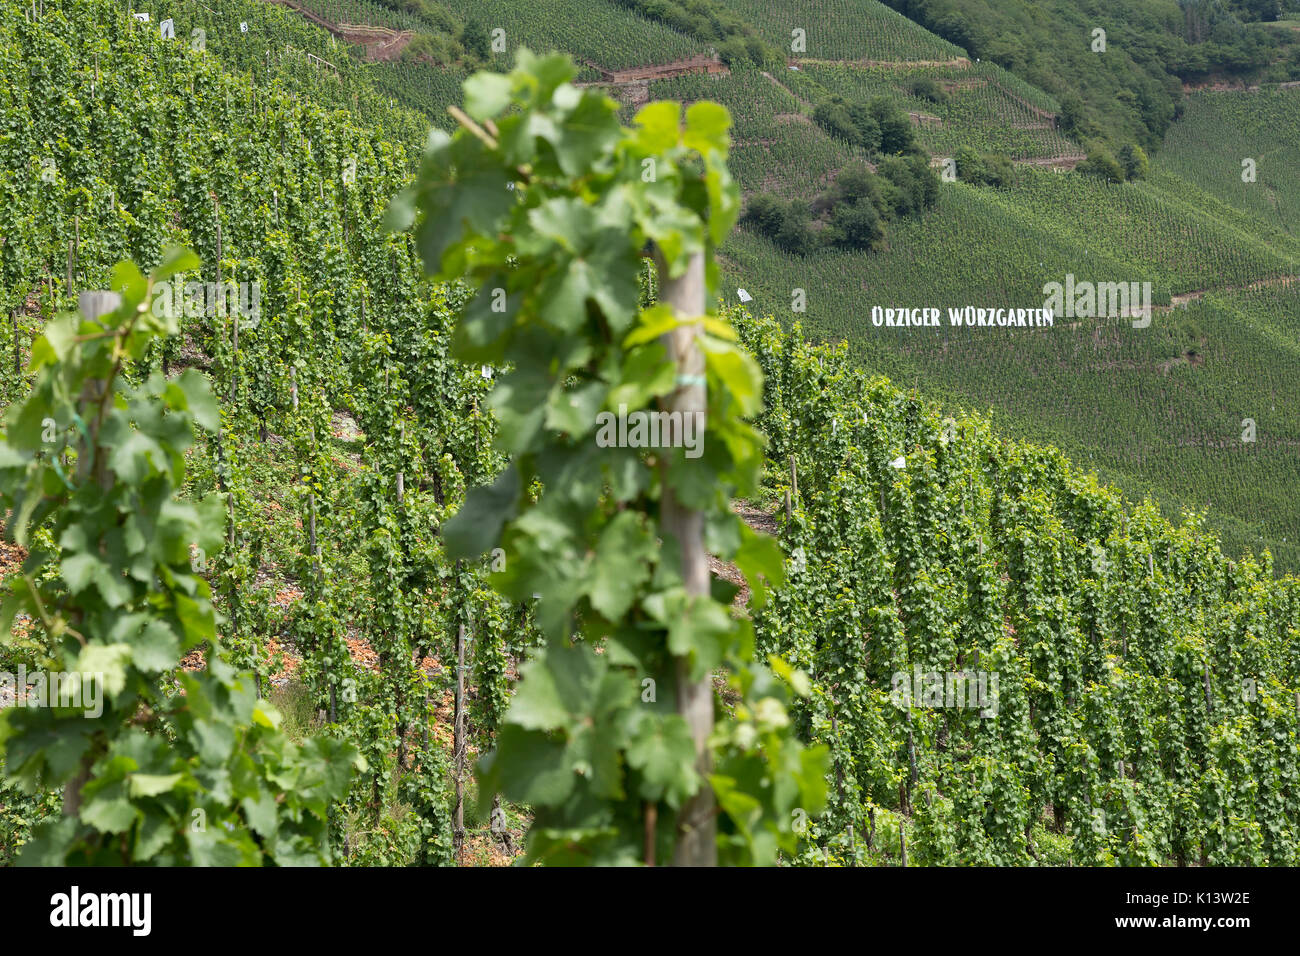 Vineyard near Uerzig, Moselle, Rhineland-Palatinate, Germany Stock Photo